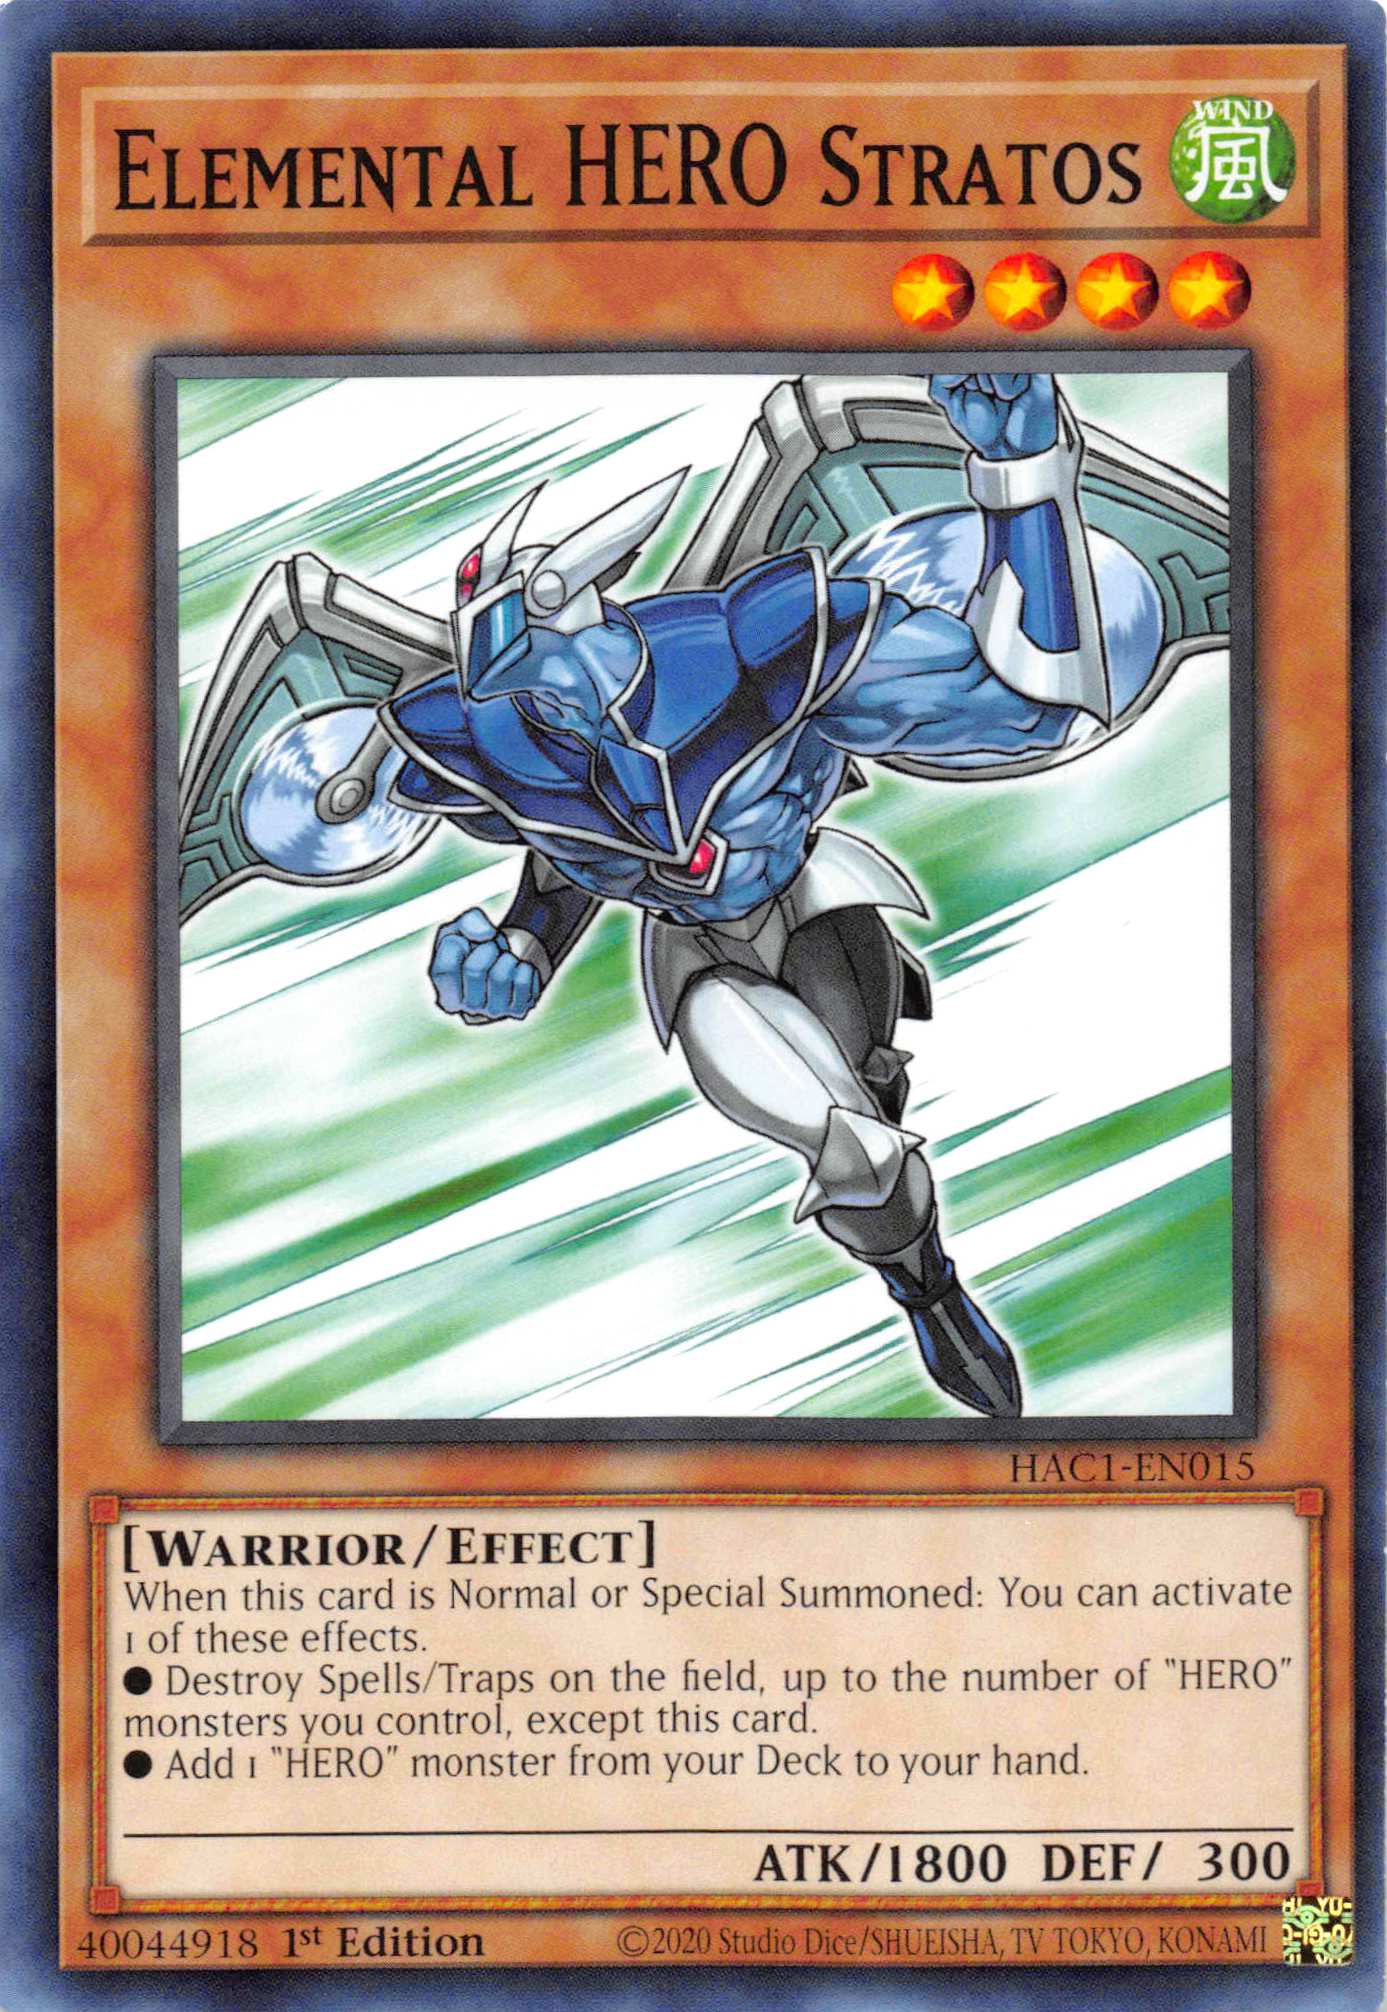 Elemental HERO Stratos [HAC1-EN015] Common - Duel Kingdom